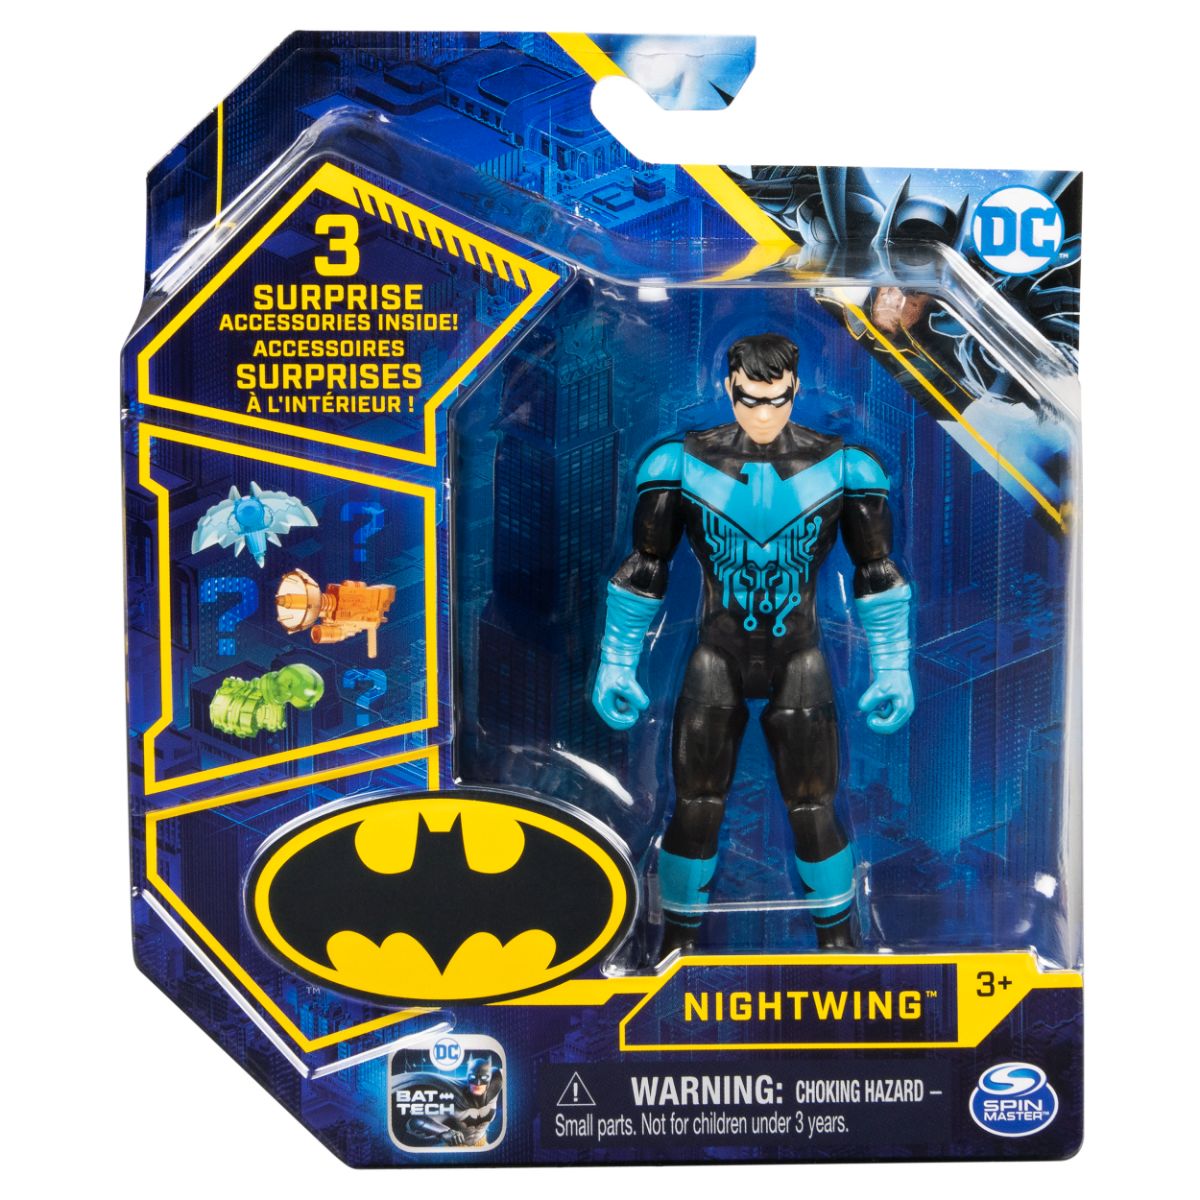 Set Figurina cu accesorii surpriza Batman, Nightwing 20131337